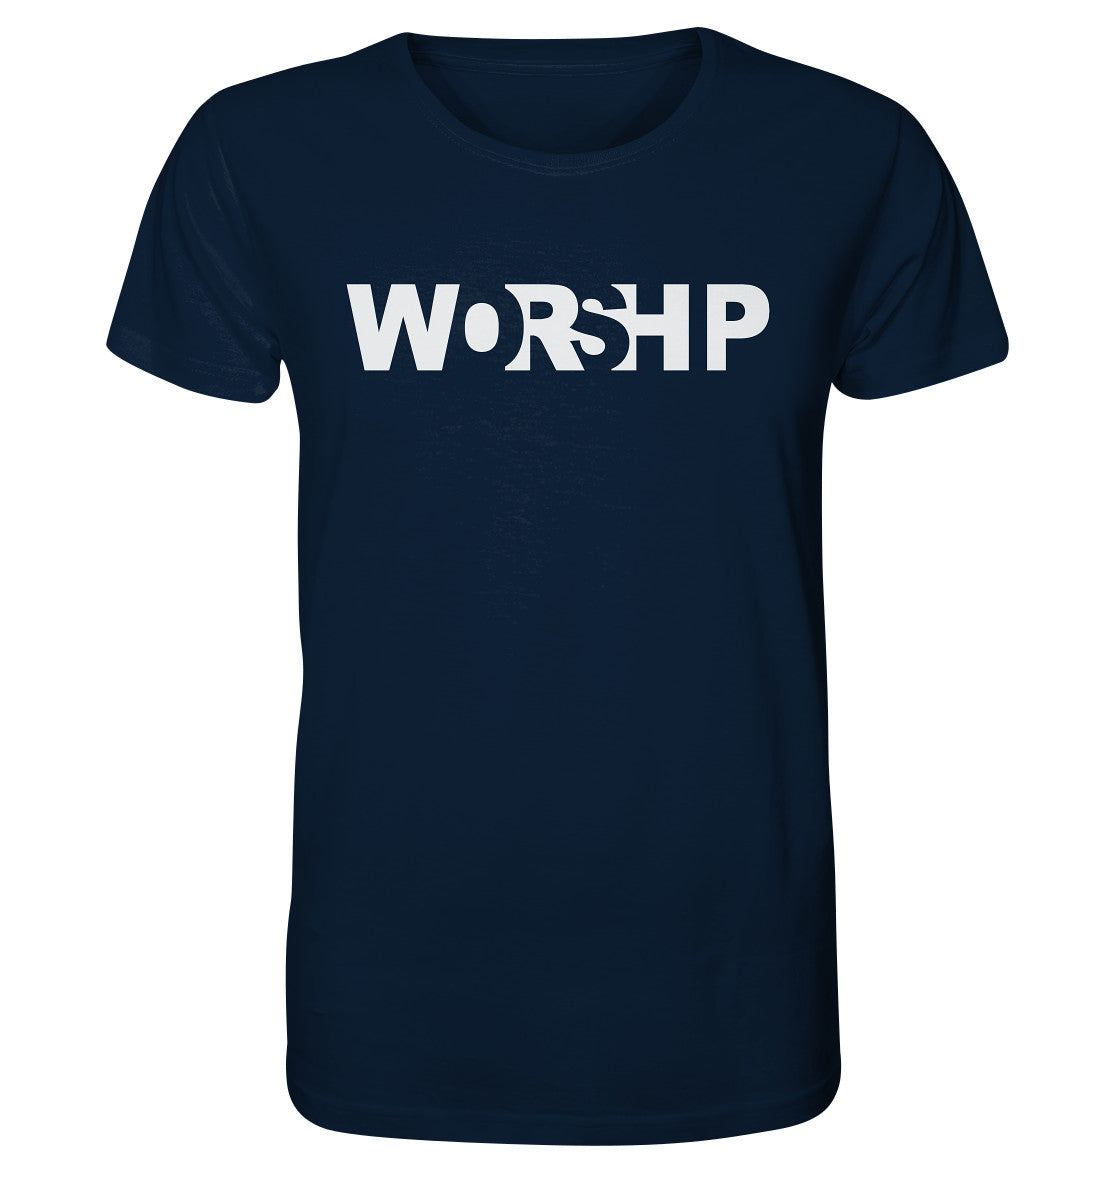 WORSHIP - Organic Shirt